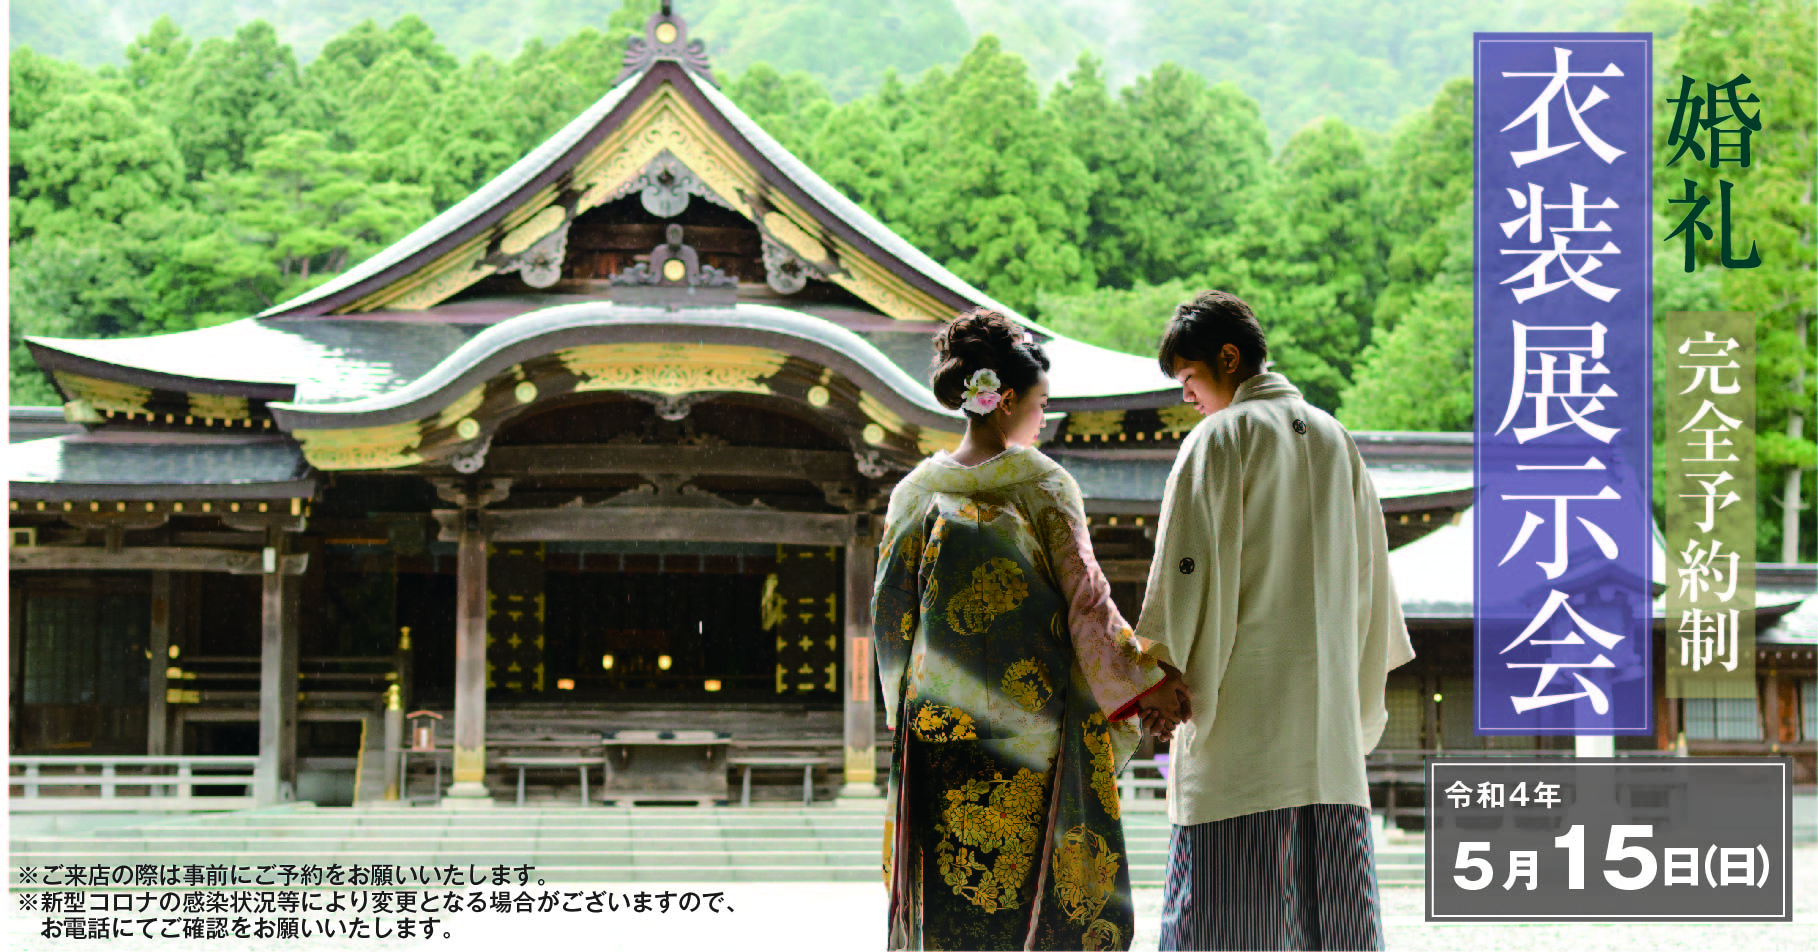 彌彦和婚 弥彦神社での結婚式